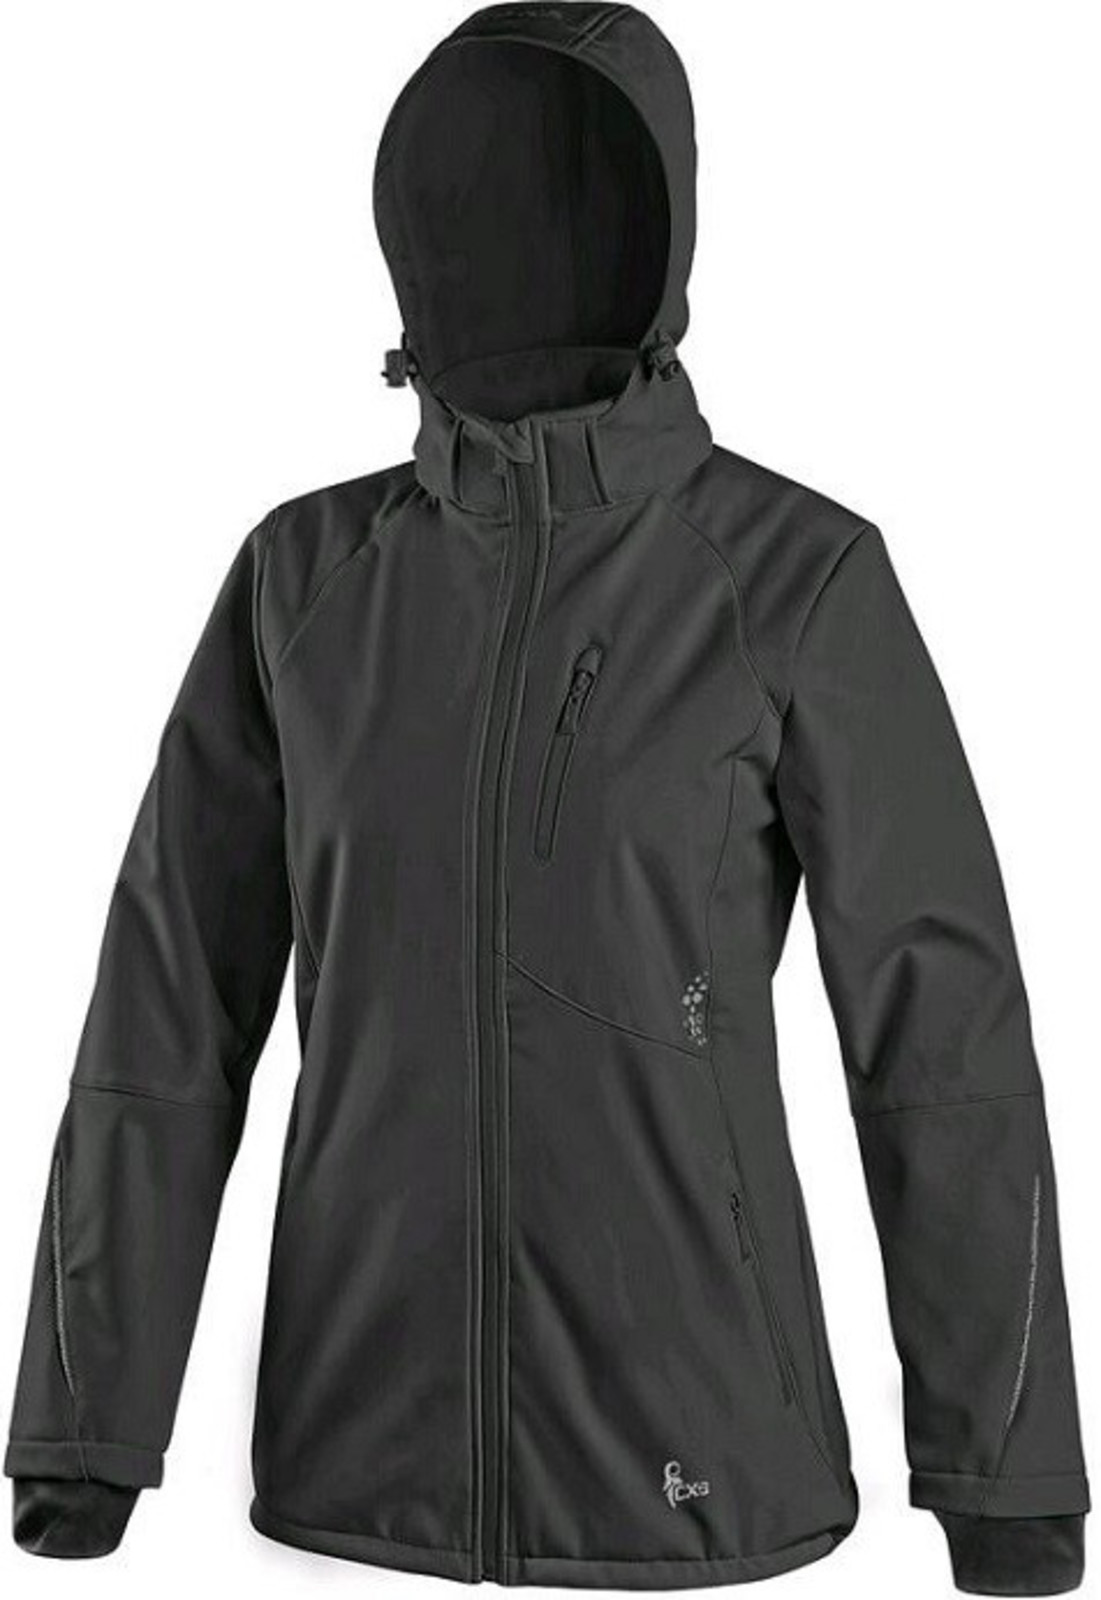 Softshellová bunda CXS Nevada dámska - veľkosť: L, farba: čierna